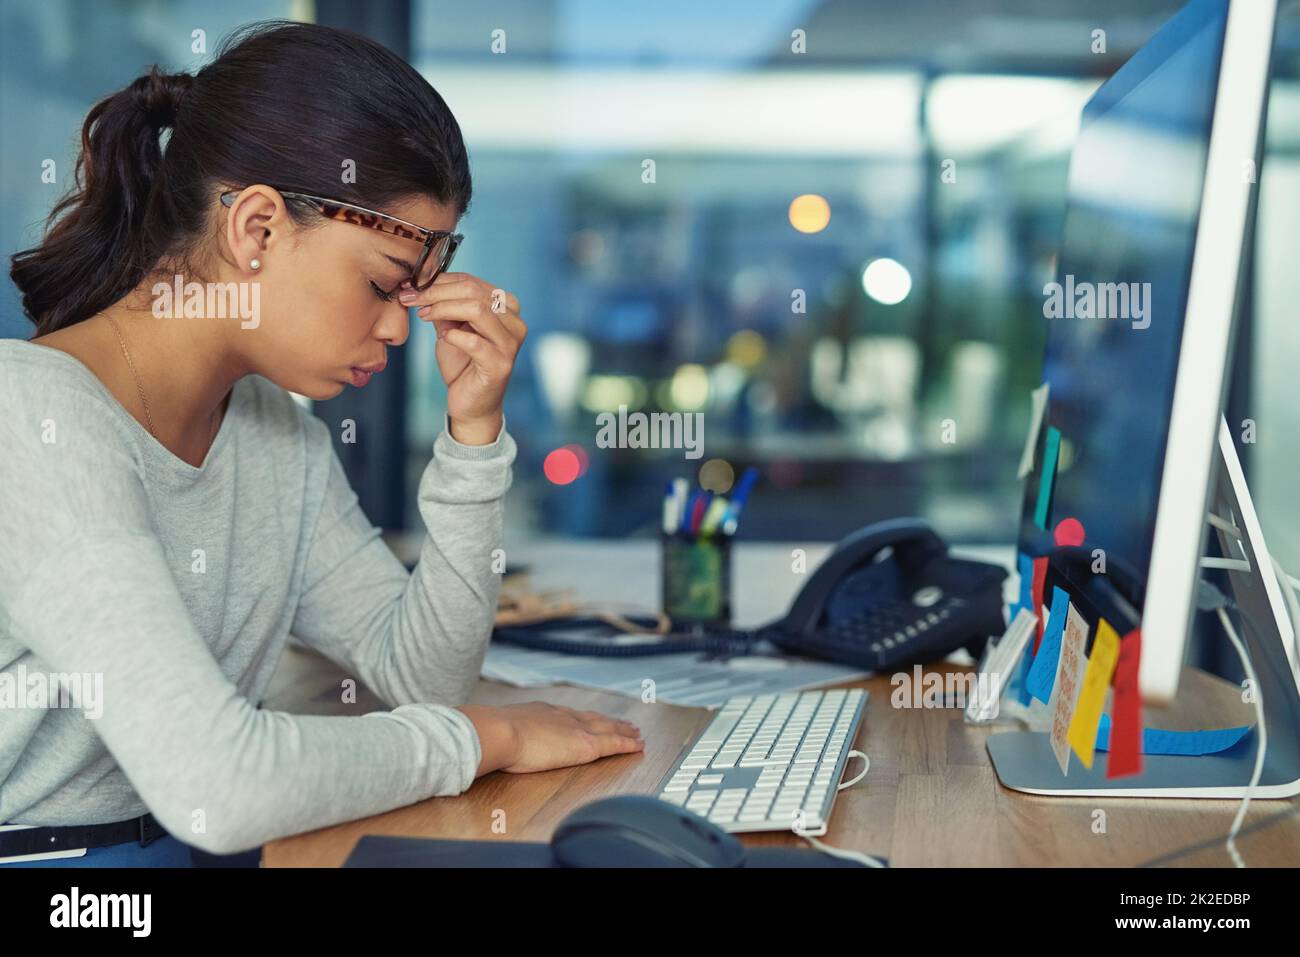 Cette douleur est totalement insupportable. Photo d'une jeune femme d'affaires qui regarde stressée dans un bureau. Banque D'Images